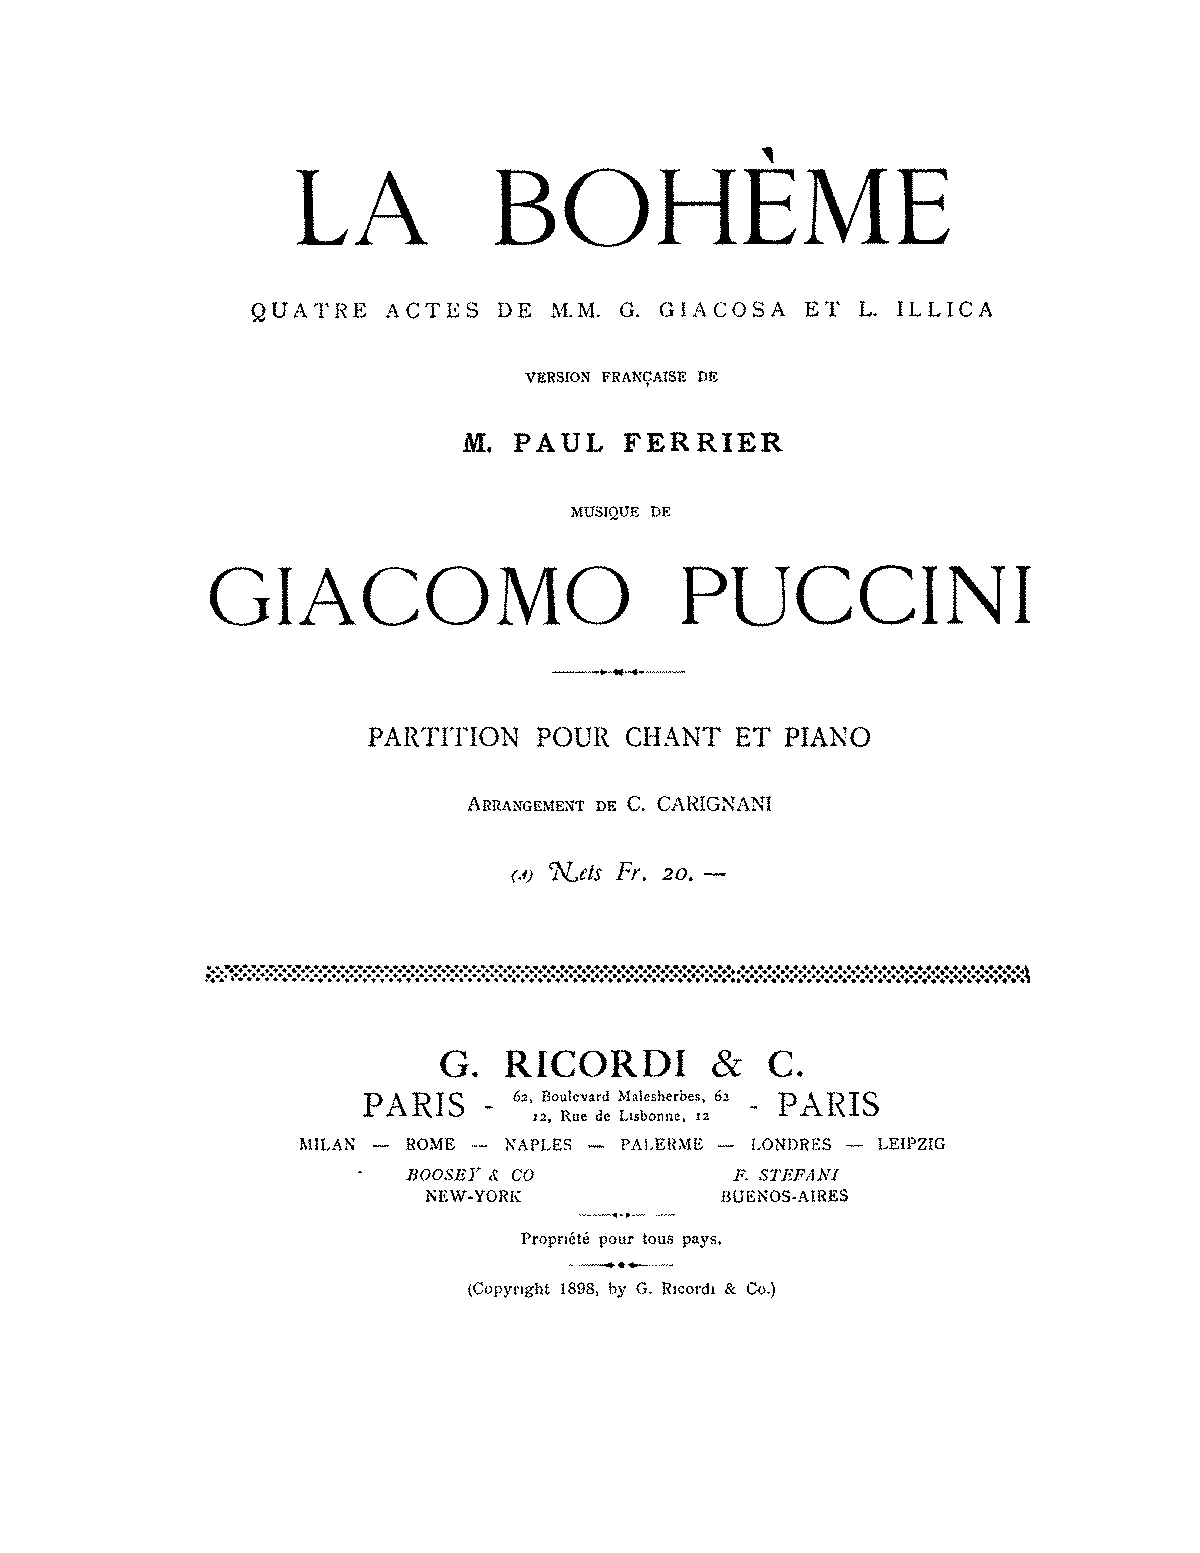 La Bohème, SC 67 (Puccini, Giacomo) - IMSLP: Free Sheet Music PDF Download